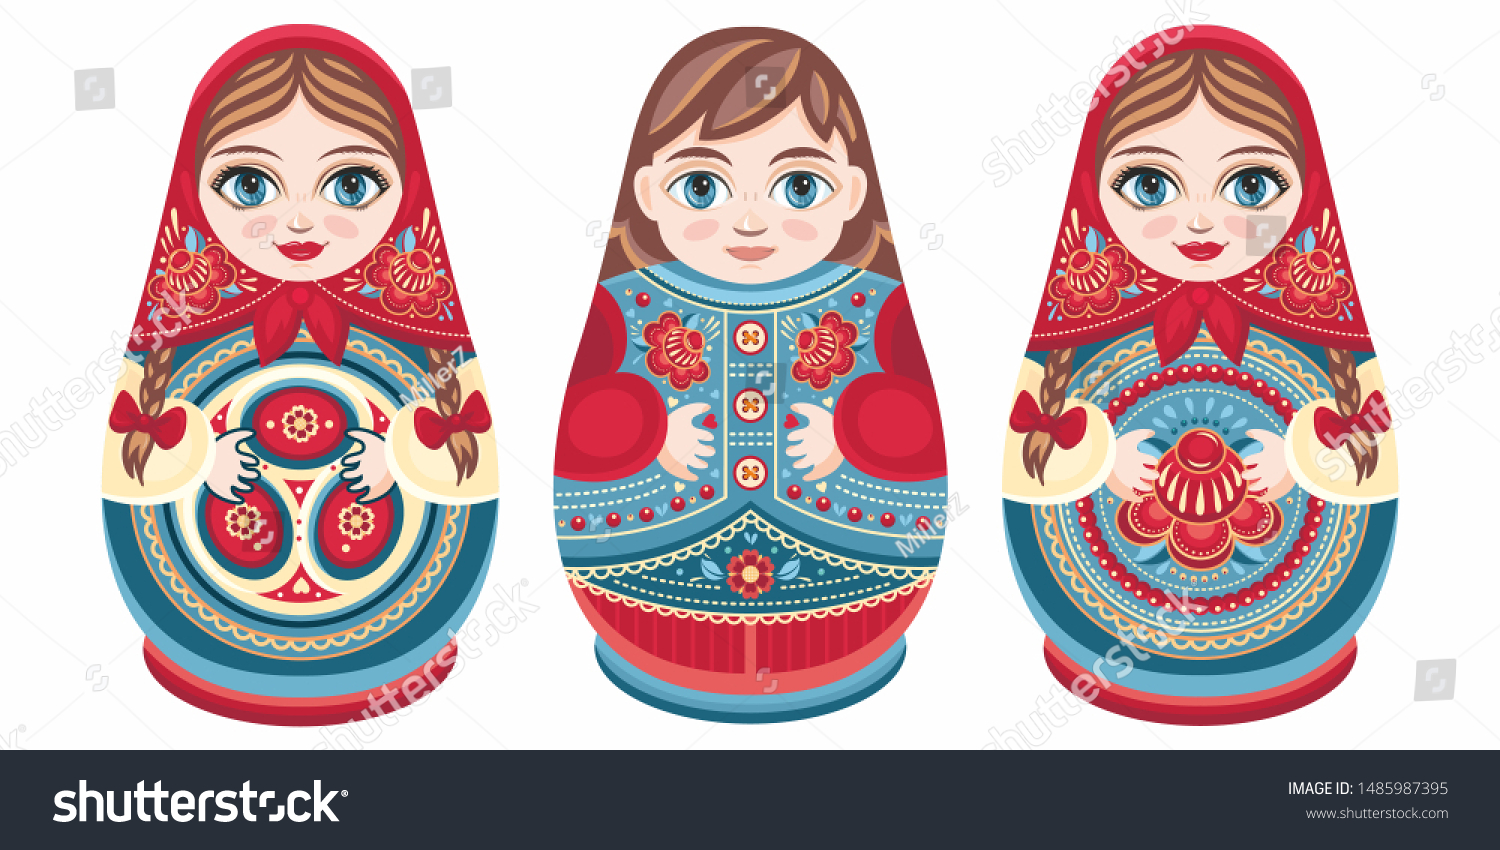 babushka doll pattern free